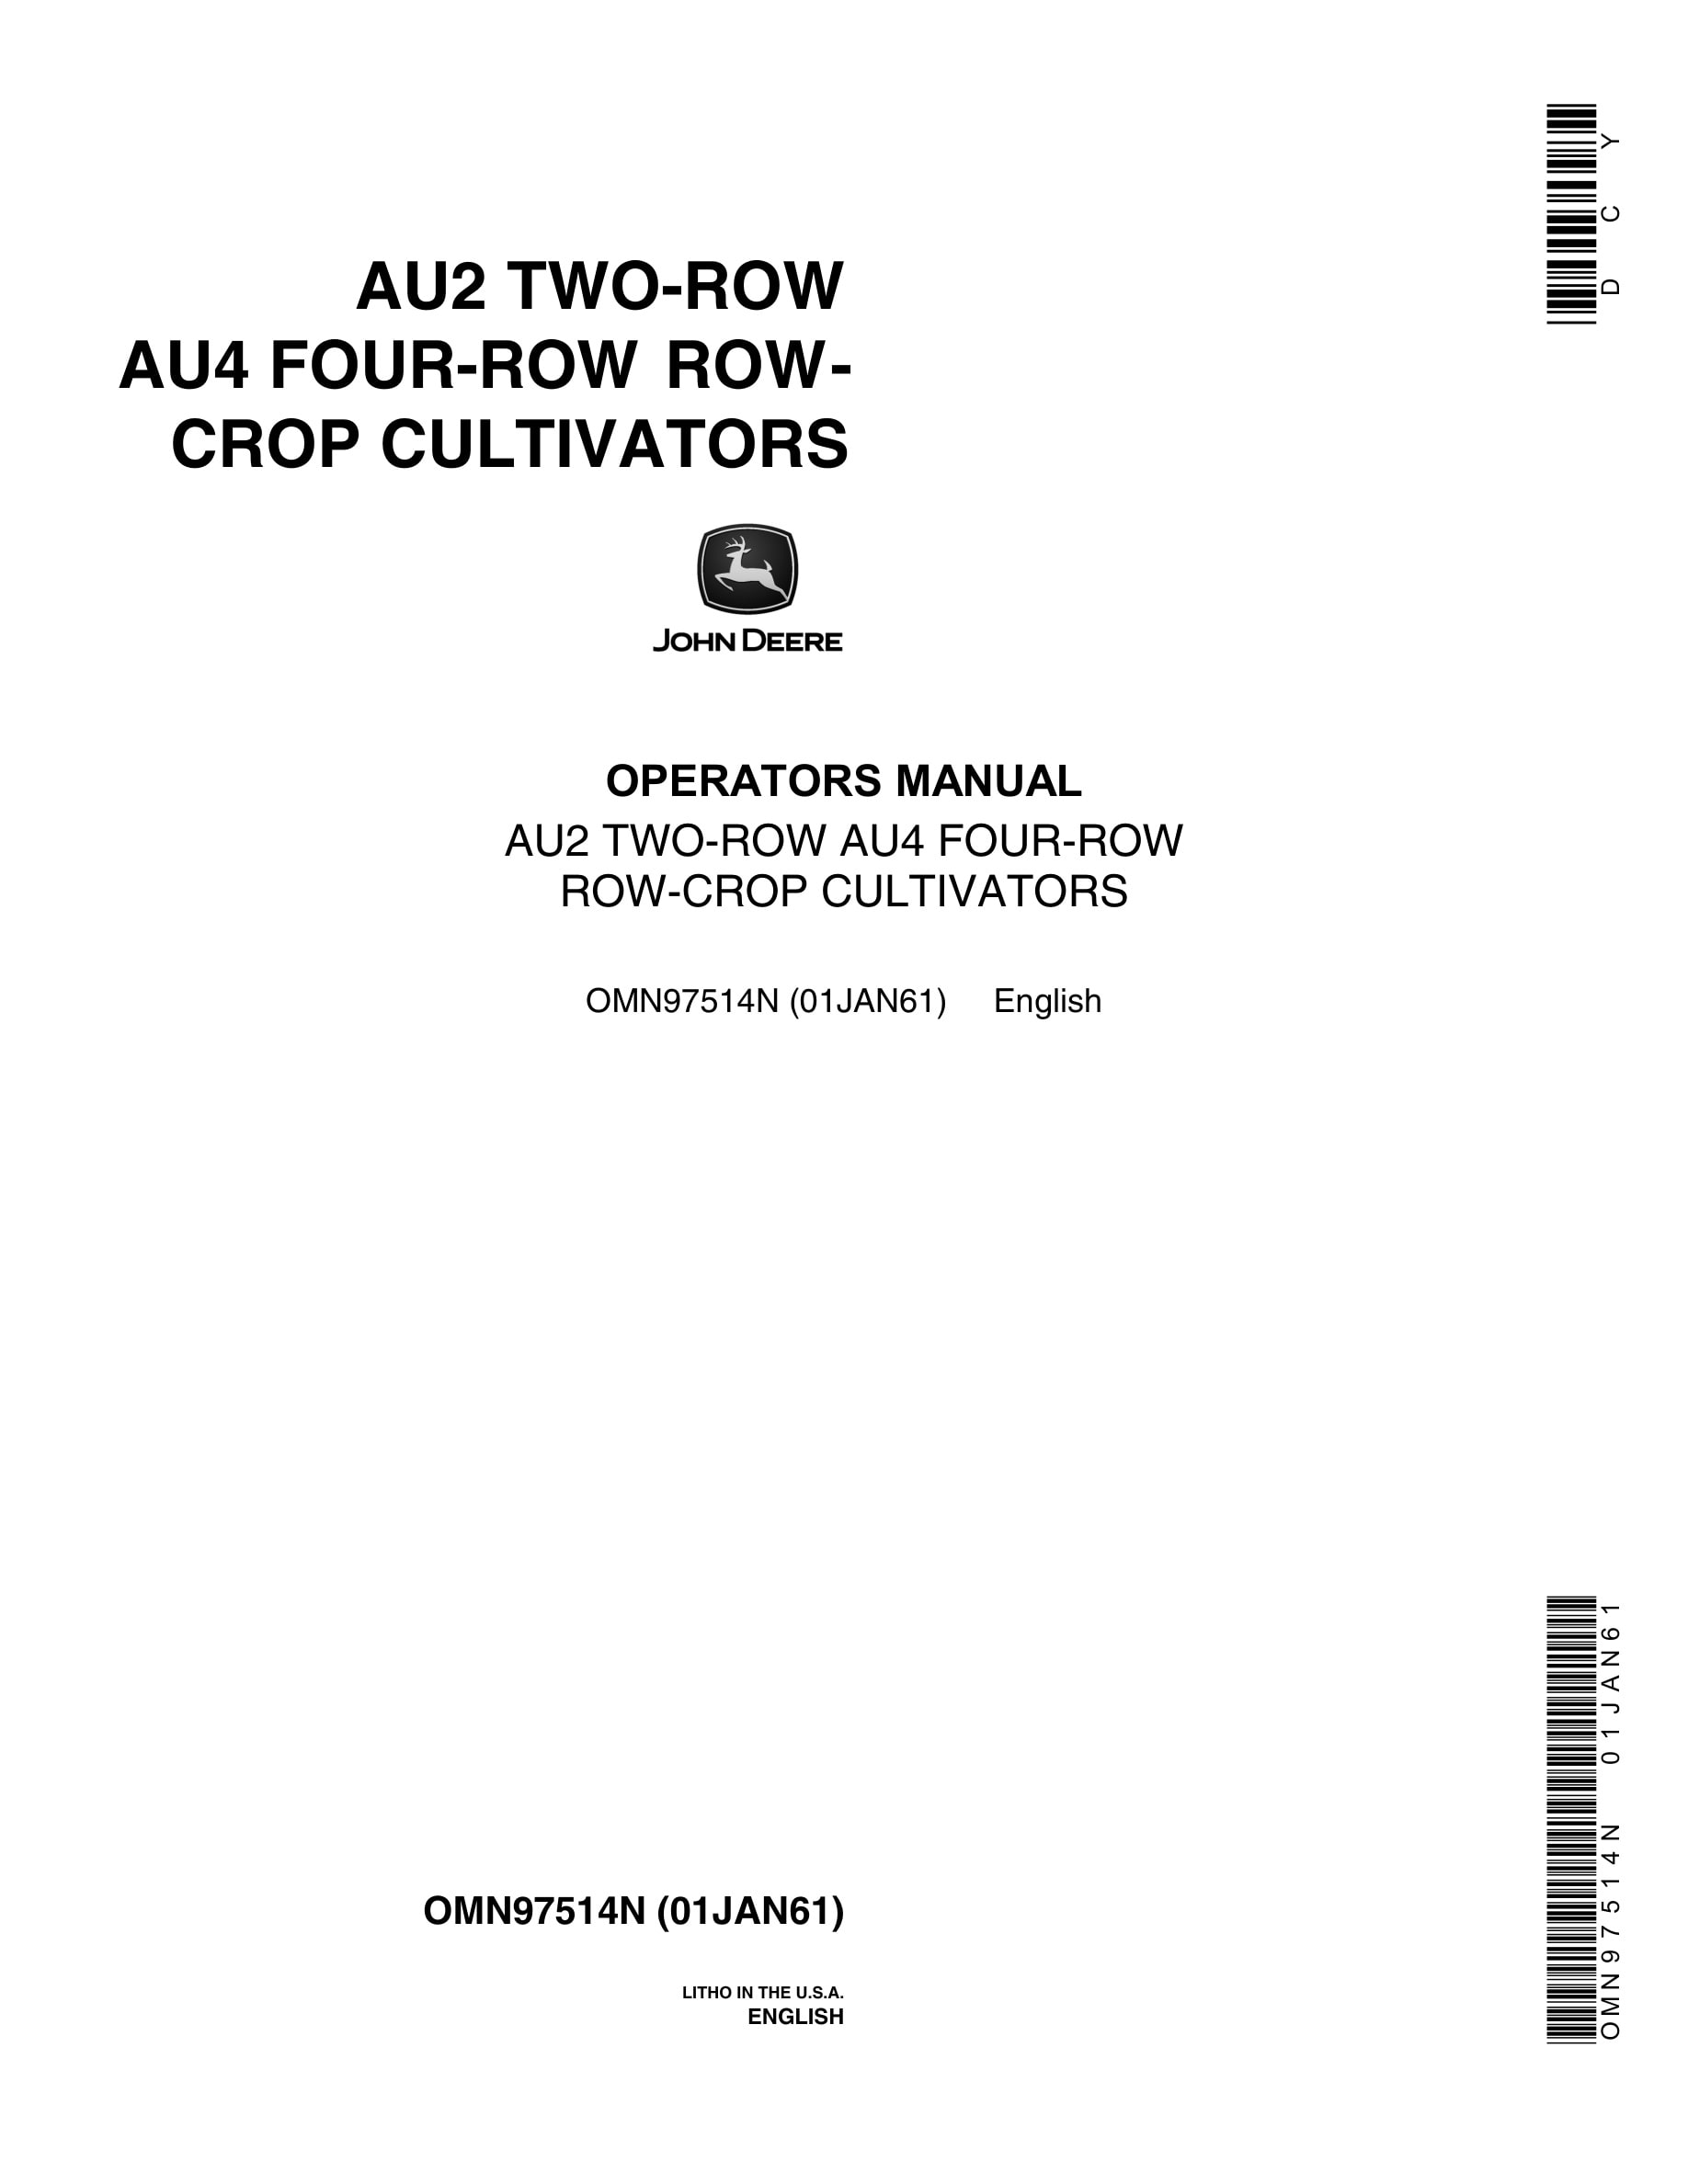 John Deere AU2 TWO-ROW AU4 FOUR-ROW ROW-CROP CULTIVATOR Operator Manual OMN97514N-1